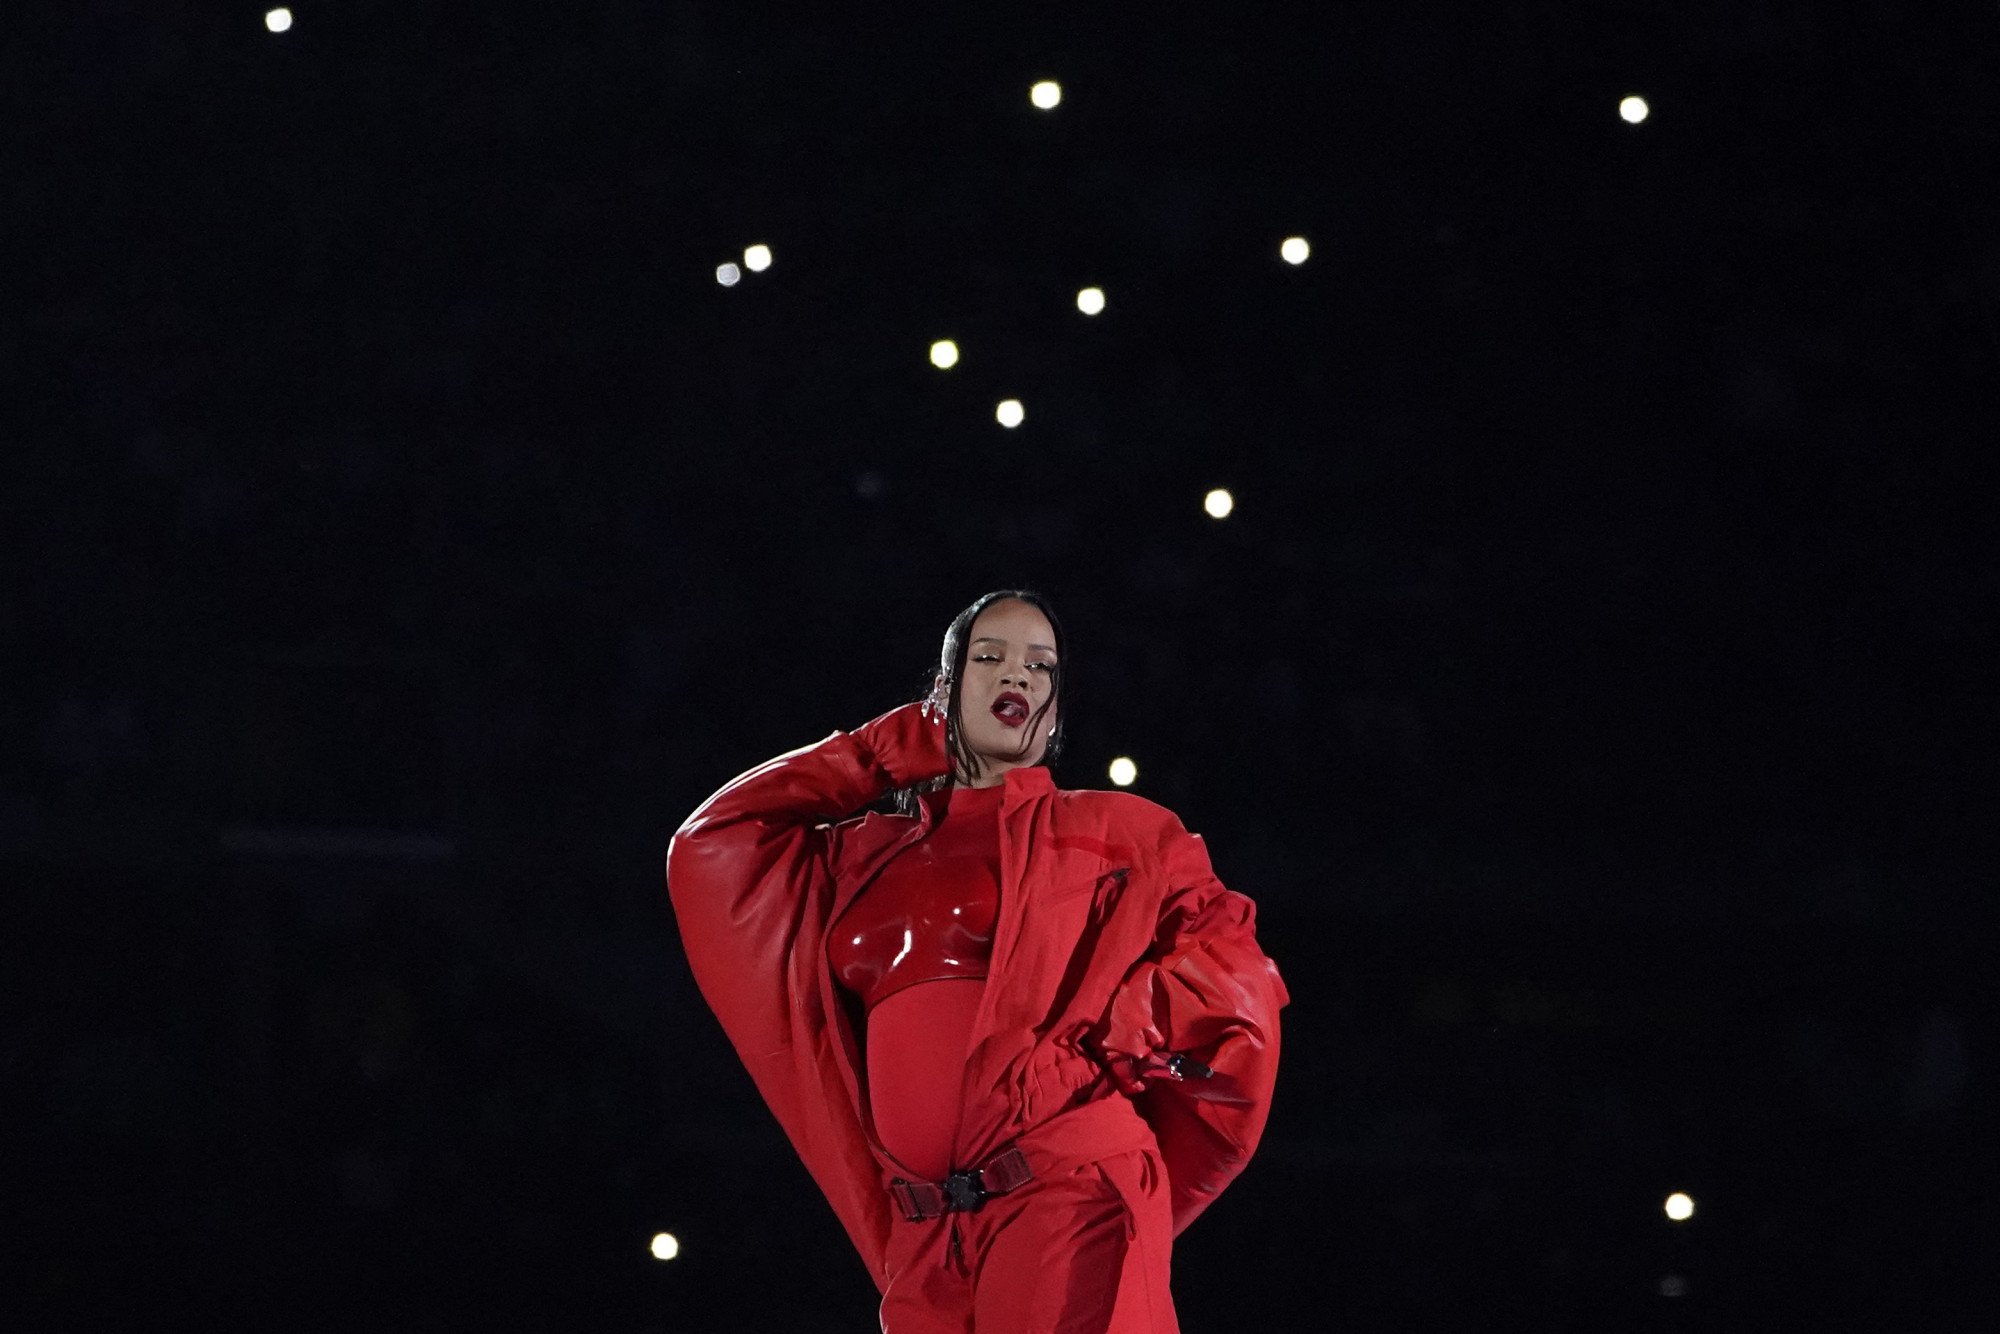 A Super Bowl félidejében derült ki, hogy Rihanna gyereket vár